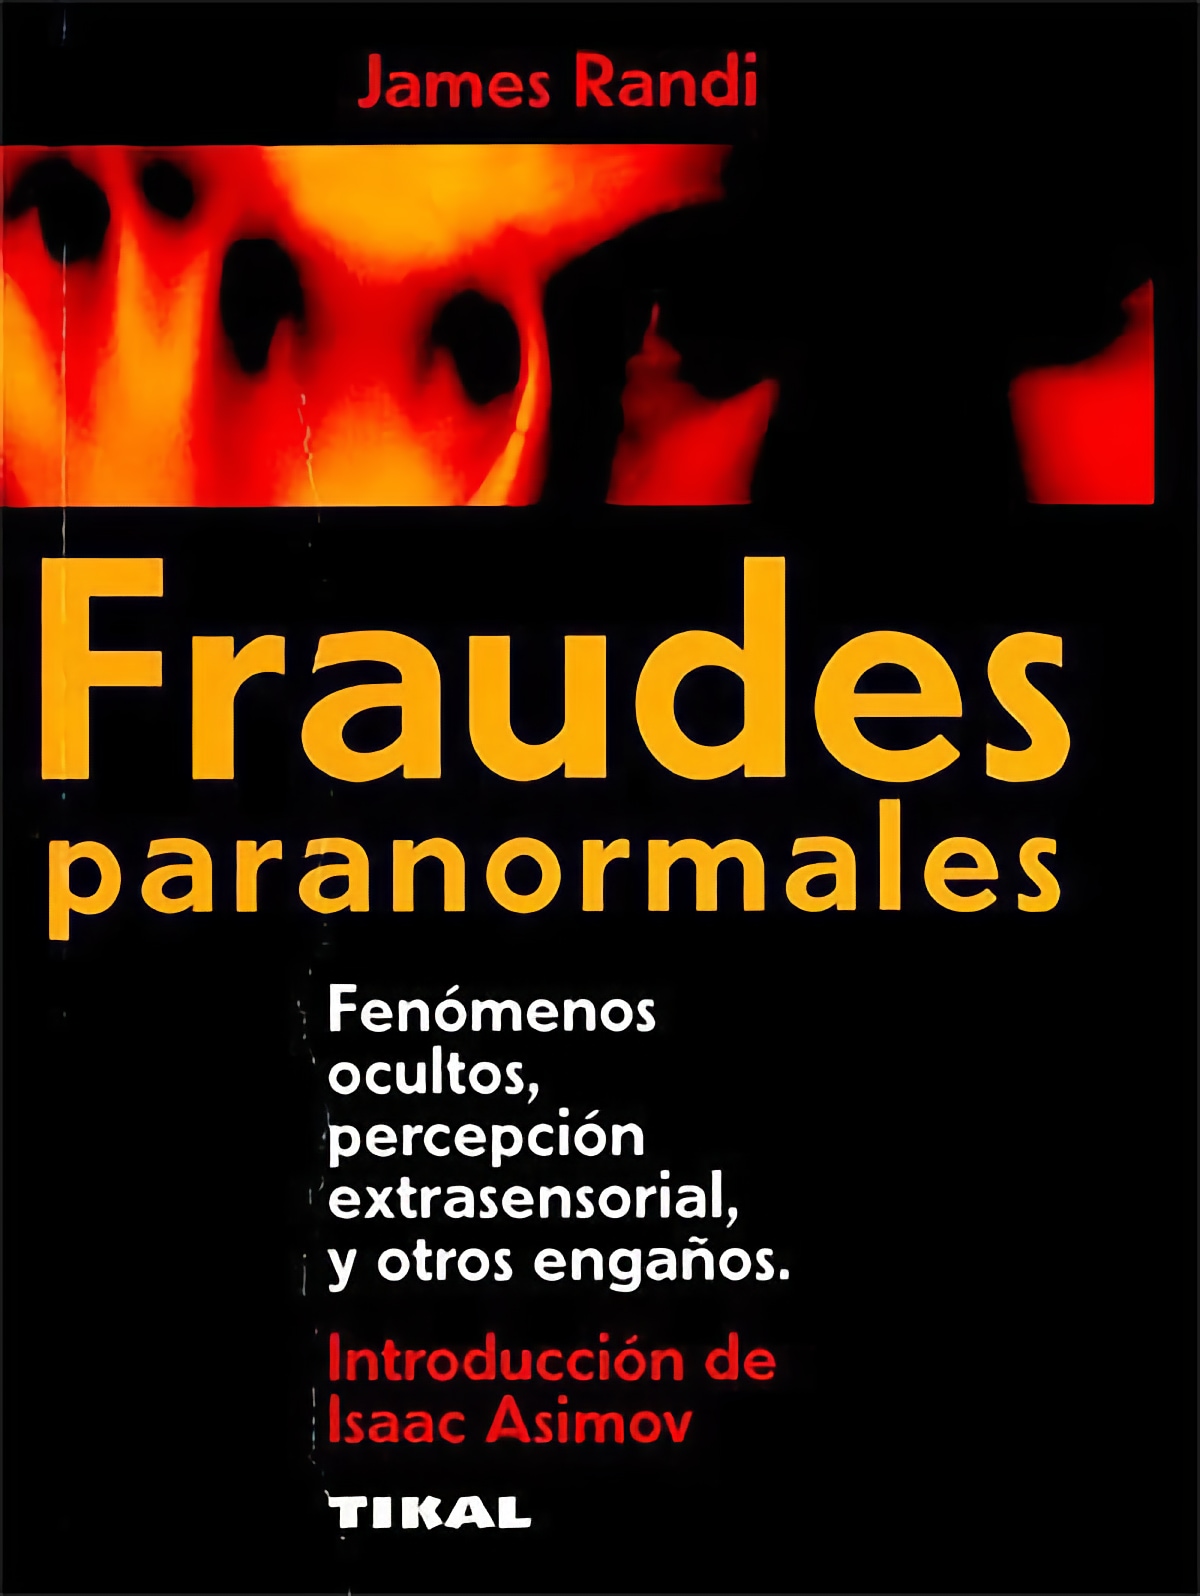 ‘Fraudes paranormales’: ¡lea un clásico de James Randi en español!